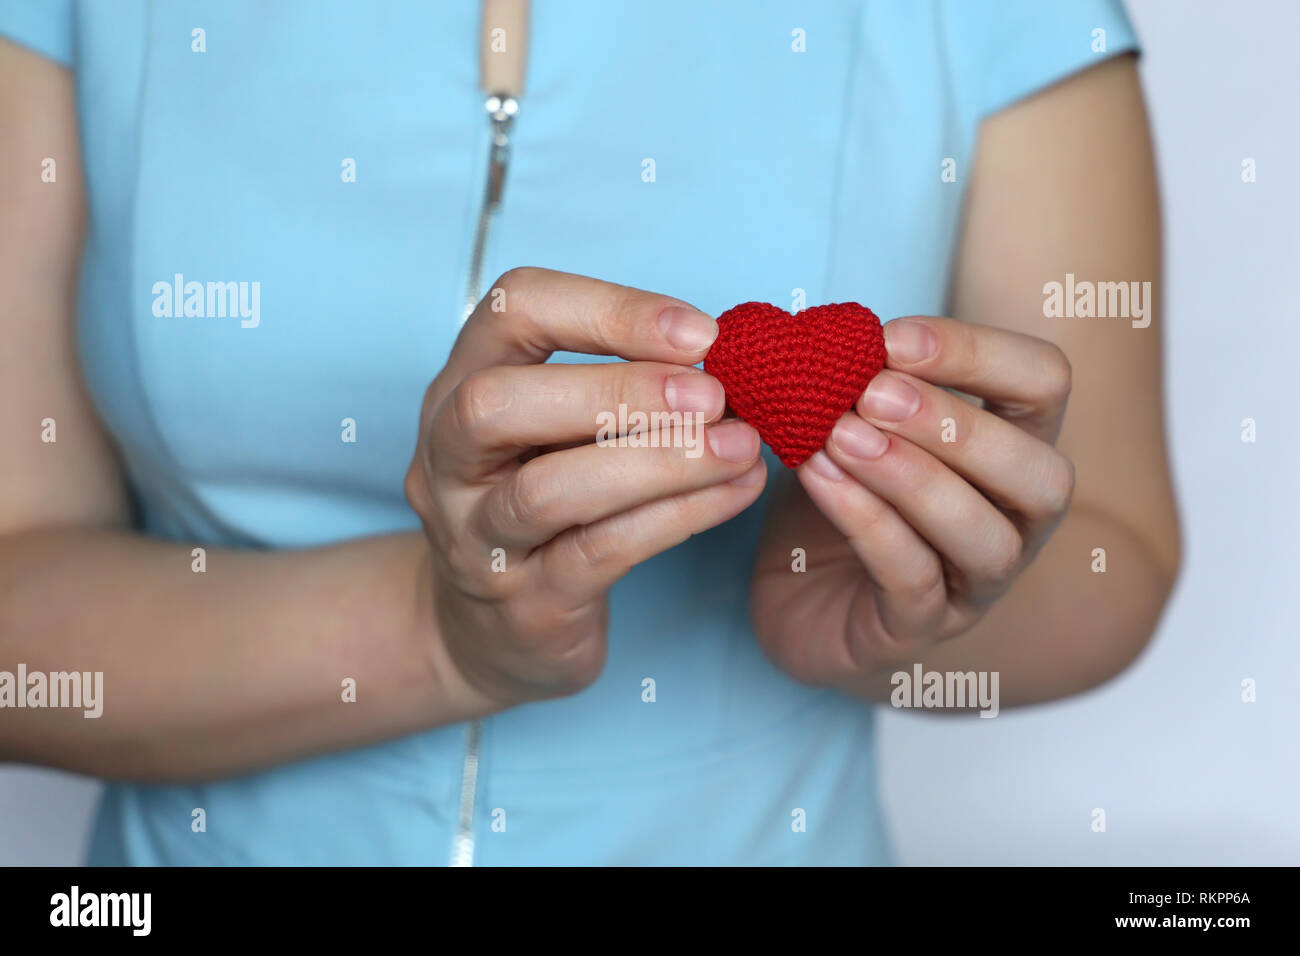 Valentines Herz, Liebeserklärung, Frau mit Rot gestrickt Herzen auf der Brust. Konzept der Romantik, Liebe, Leben retten, Gesundheit Stockfoto